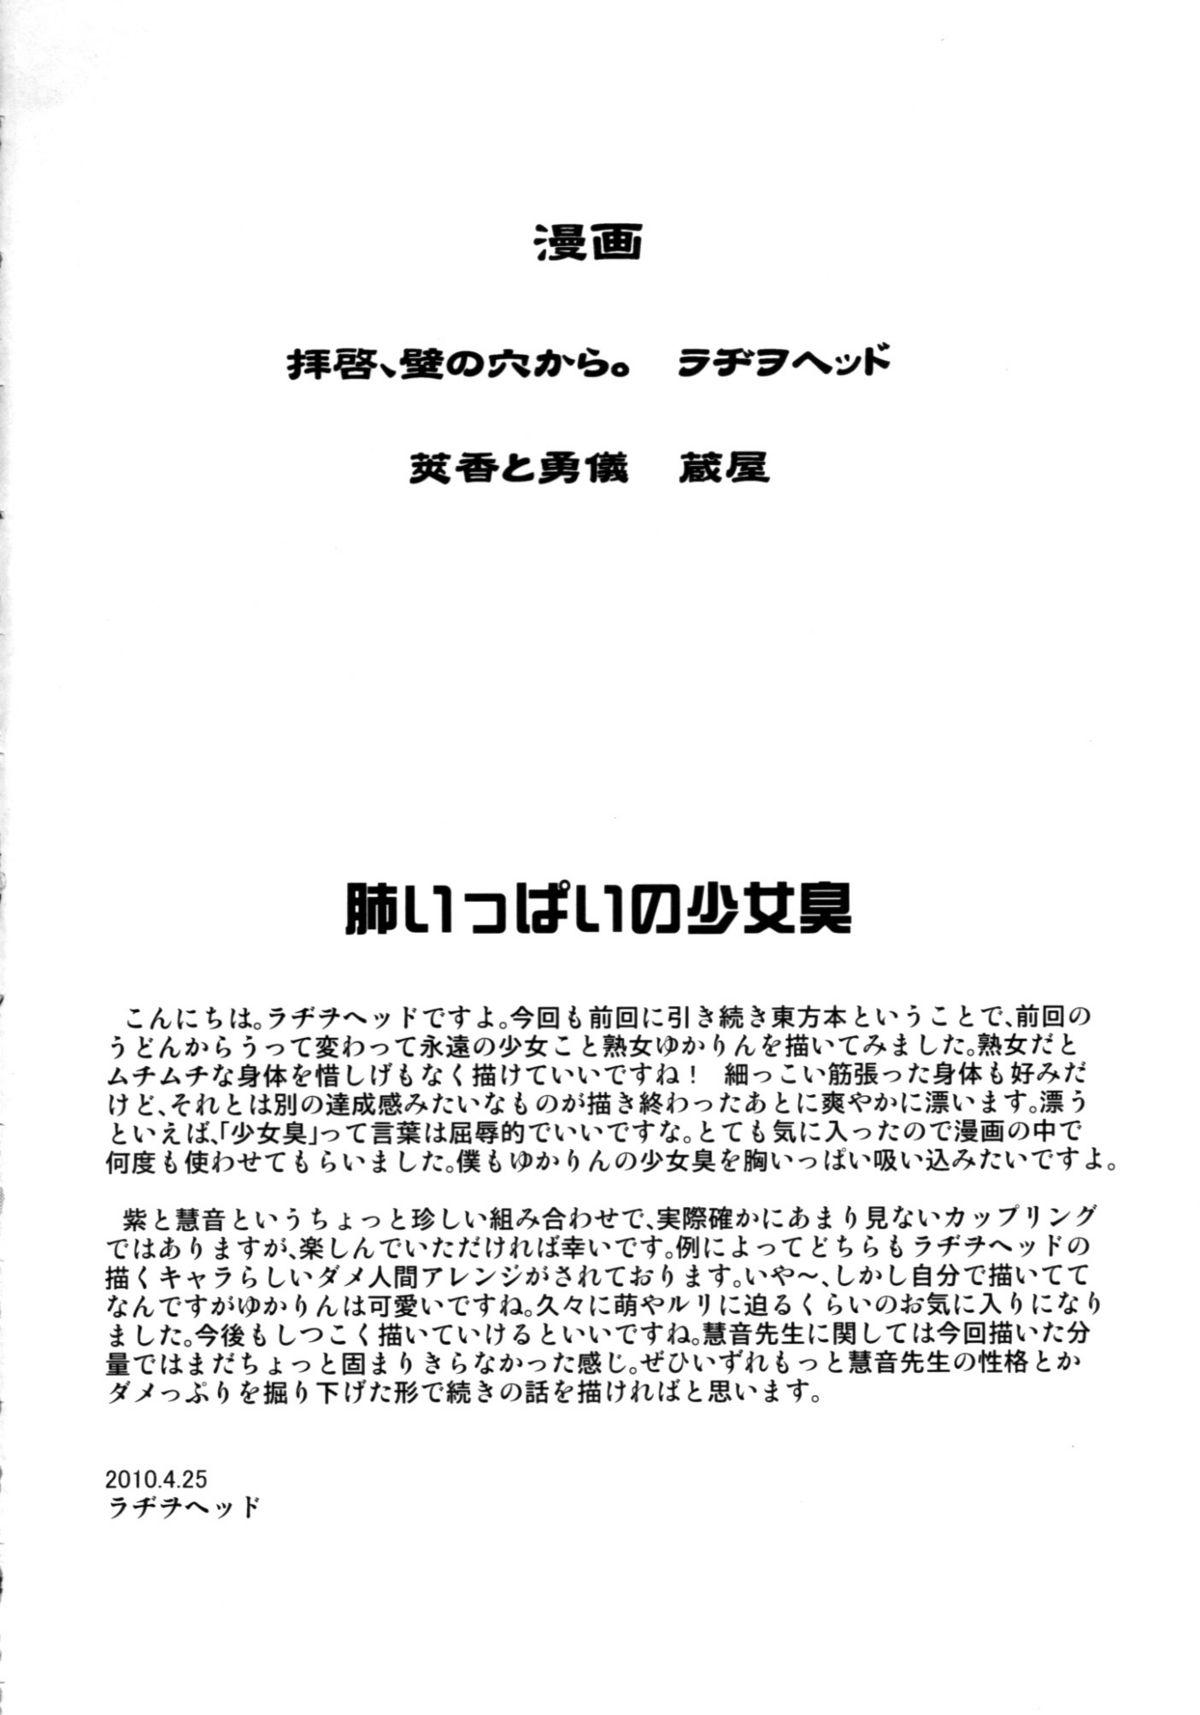 Shavedpussy Haikei, Kabe no Ana kara. - Touhou project Nude - Page 3